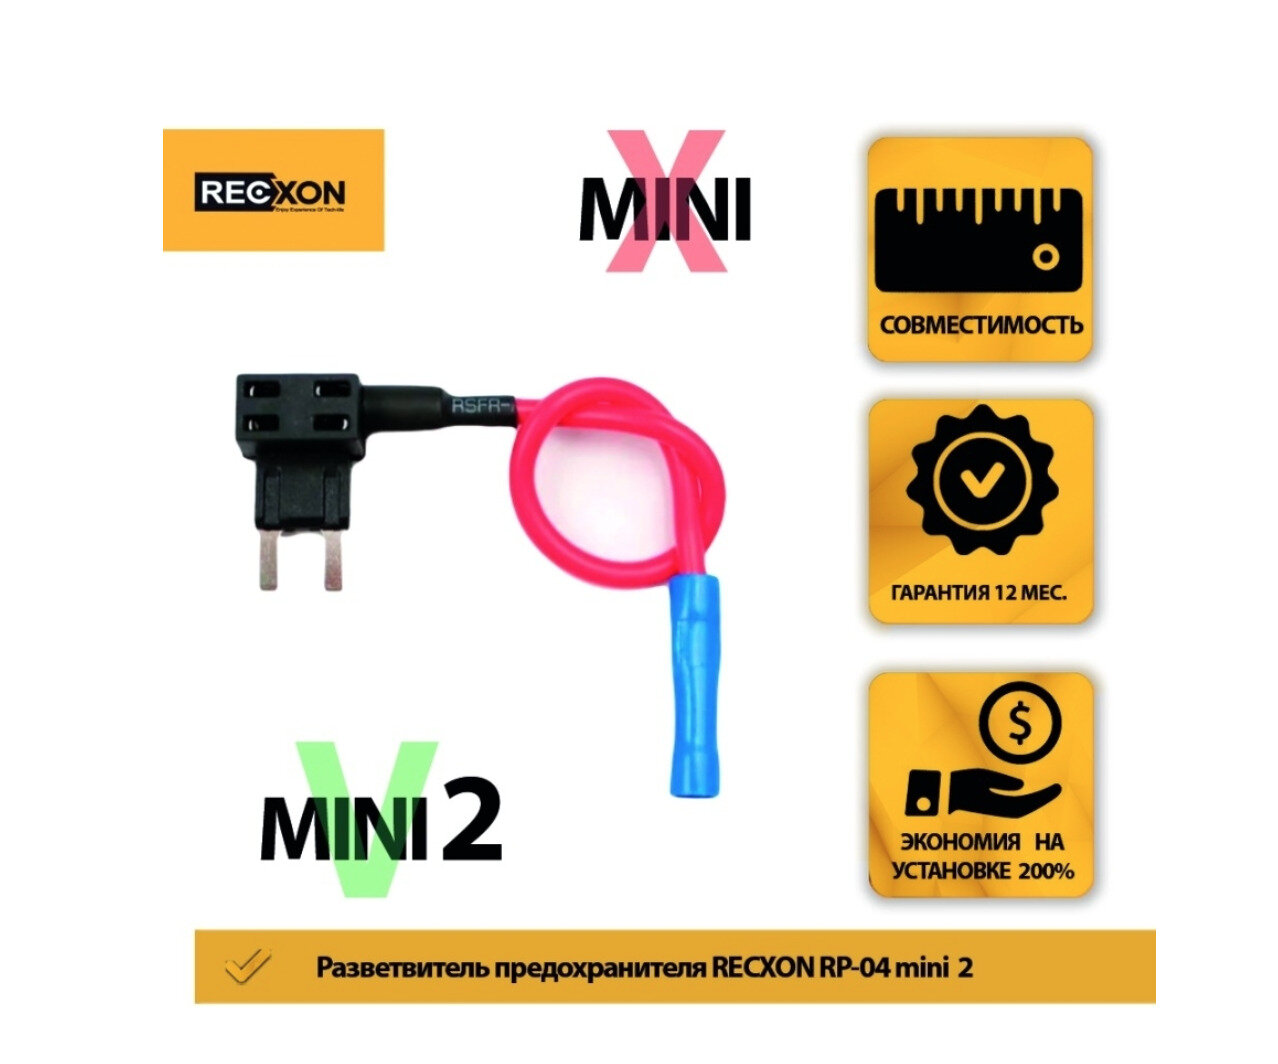 Разветвитель предохранителя RECXON RP-04 mini 2 для подключения видеорегистраторов в колодку предохранителей